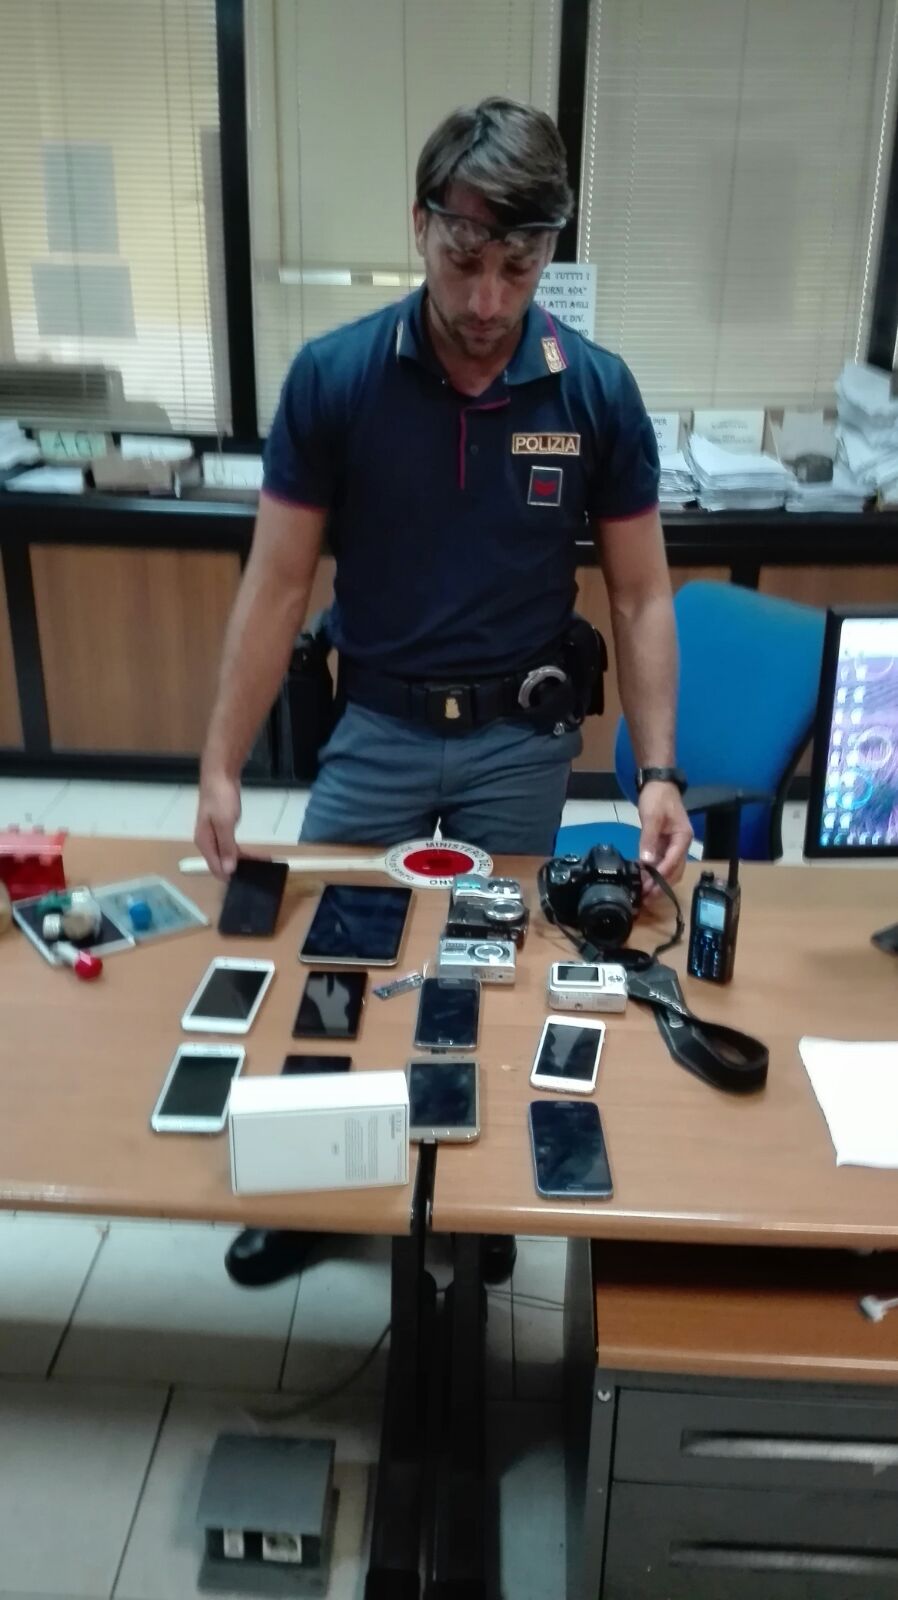 Bloccato dalla Polizia mentre allestiva una bancarella di telefoni e fotocamere rubate a ridosso di Piazza Garibaldi